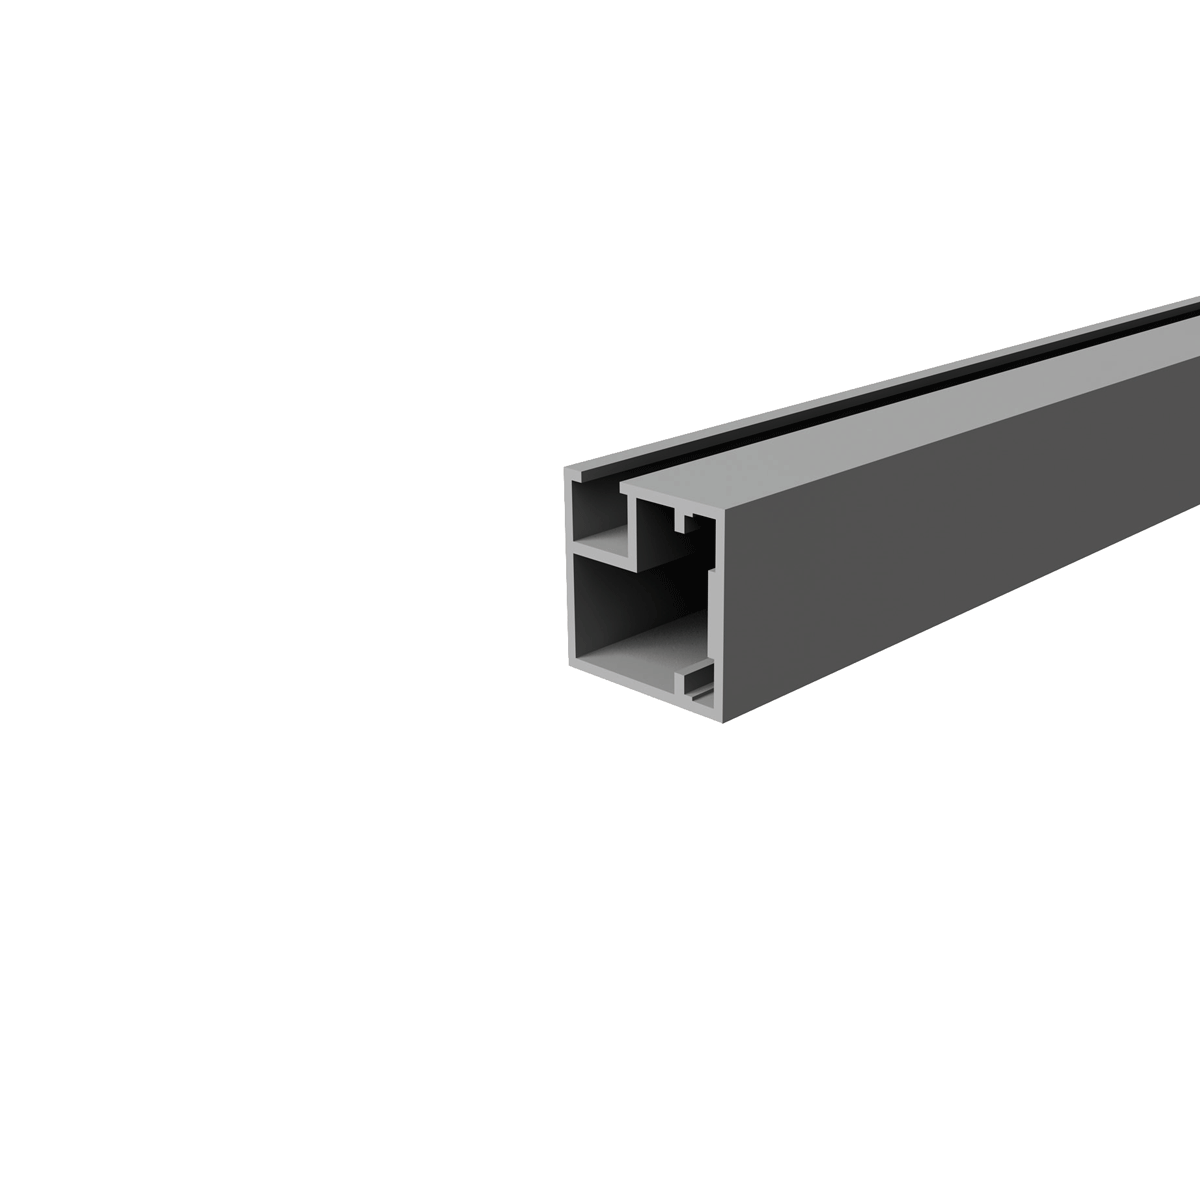 profilo in alluminio frame 14 anodizzato 1 metro raw opaco 5850 -  Elettroluce Store